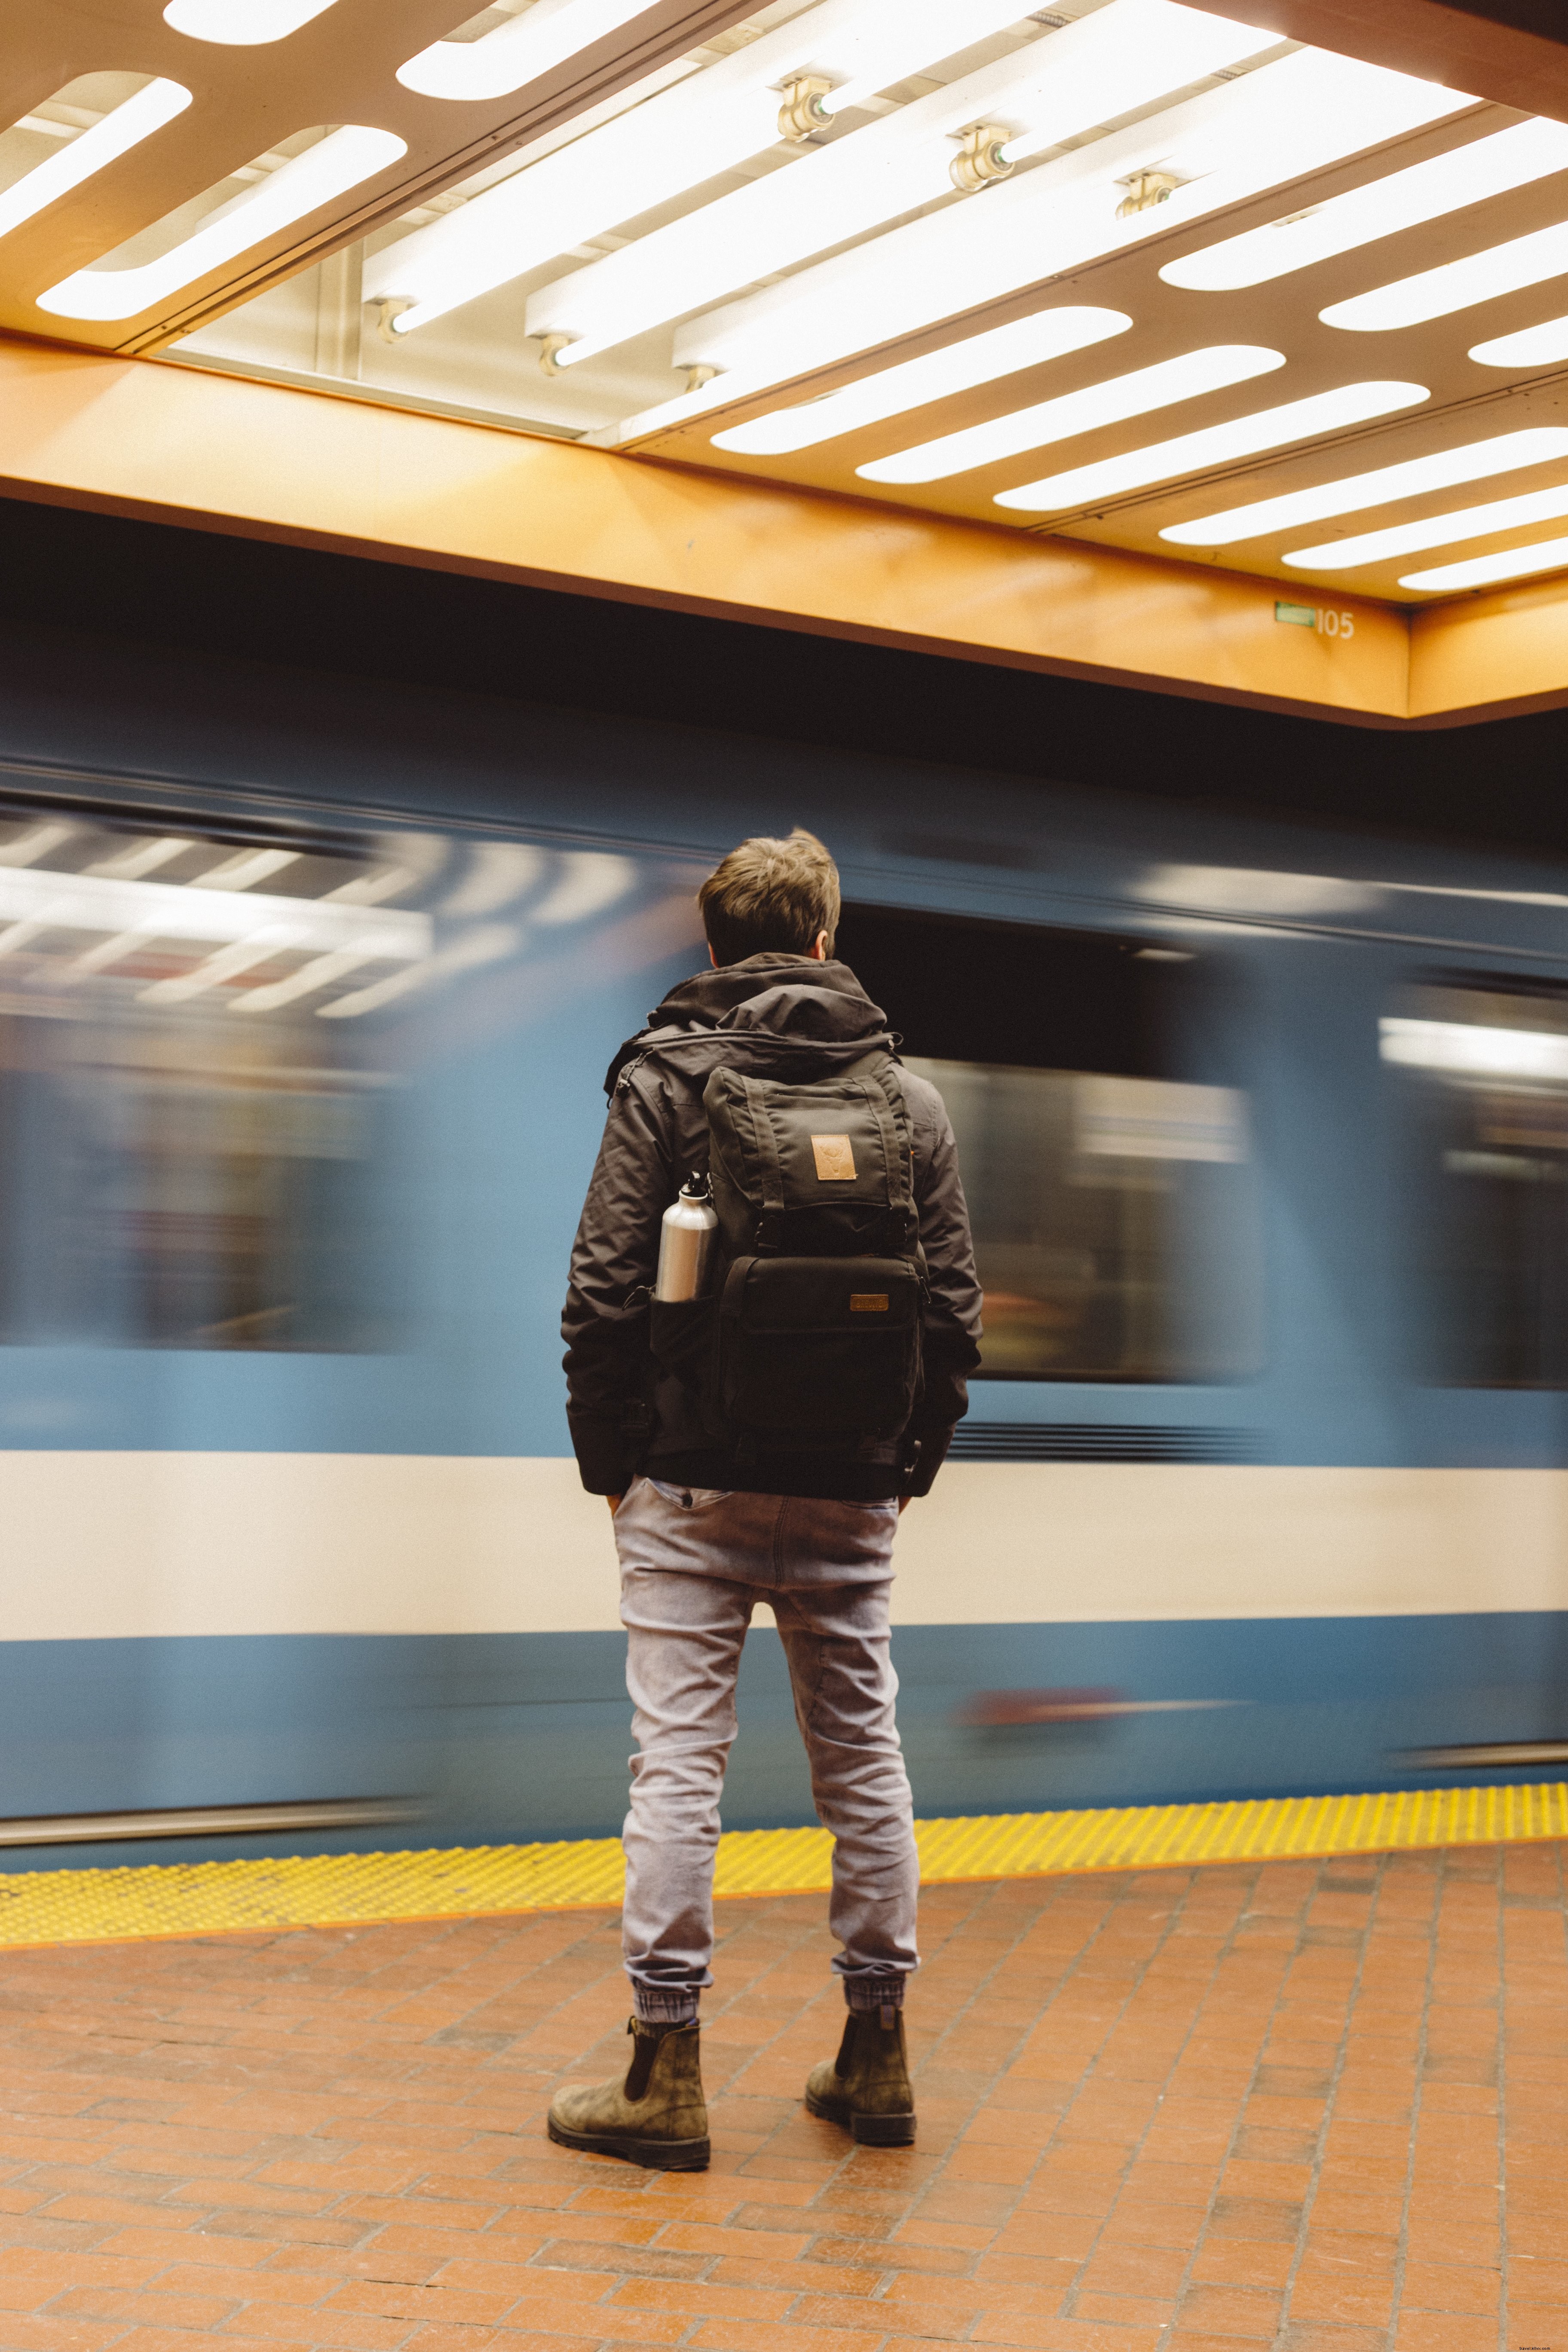 Foto do passageiro em uma plataforma de metrô